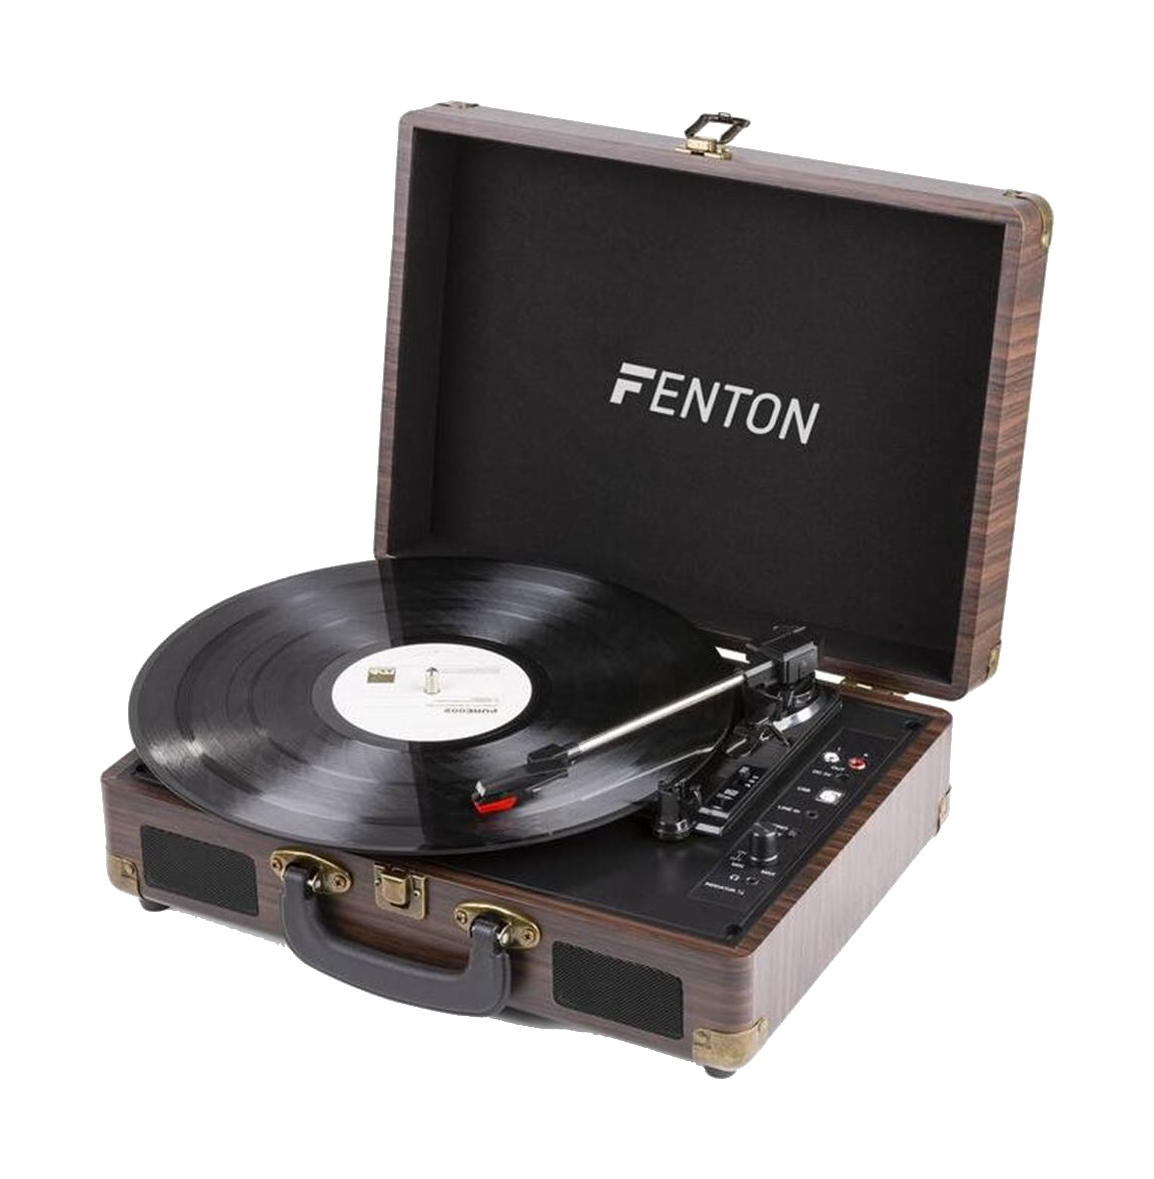 Fenton RP115 BT